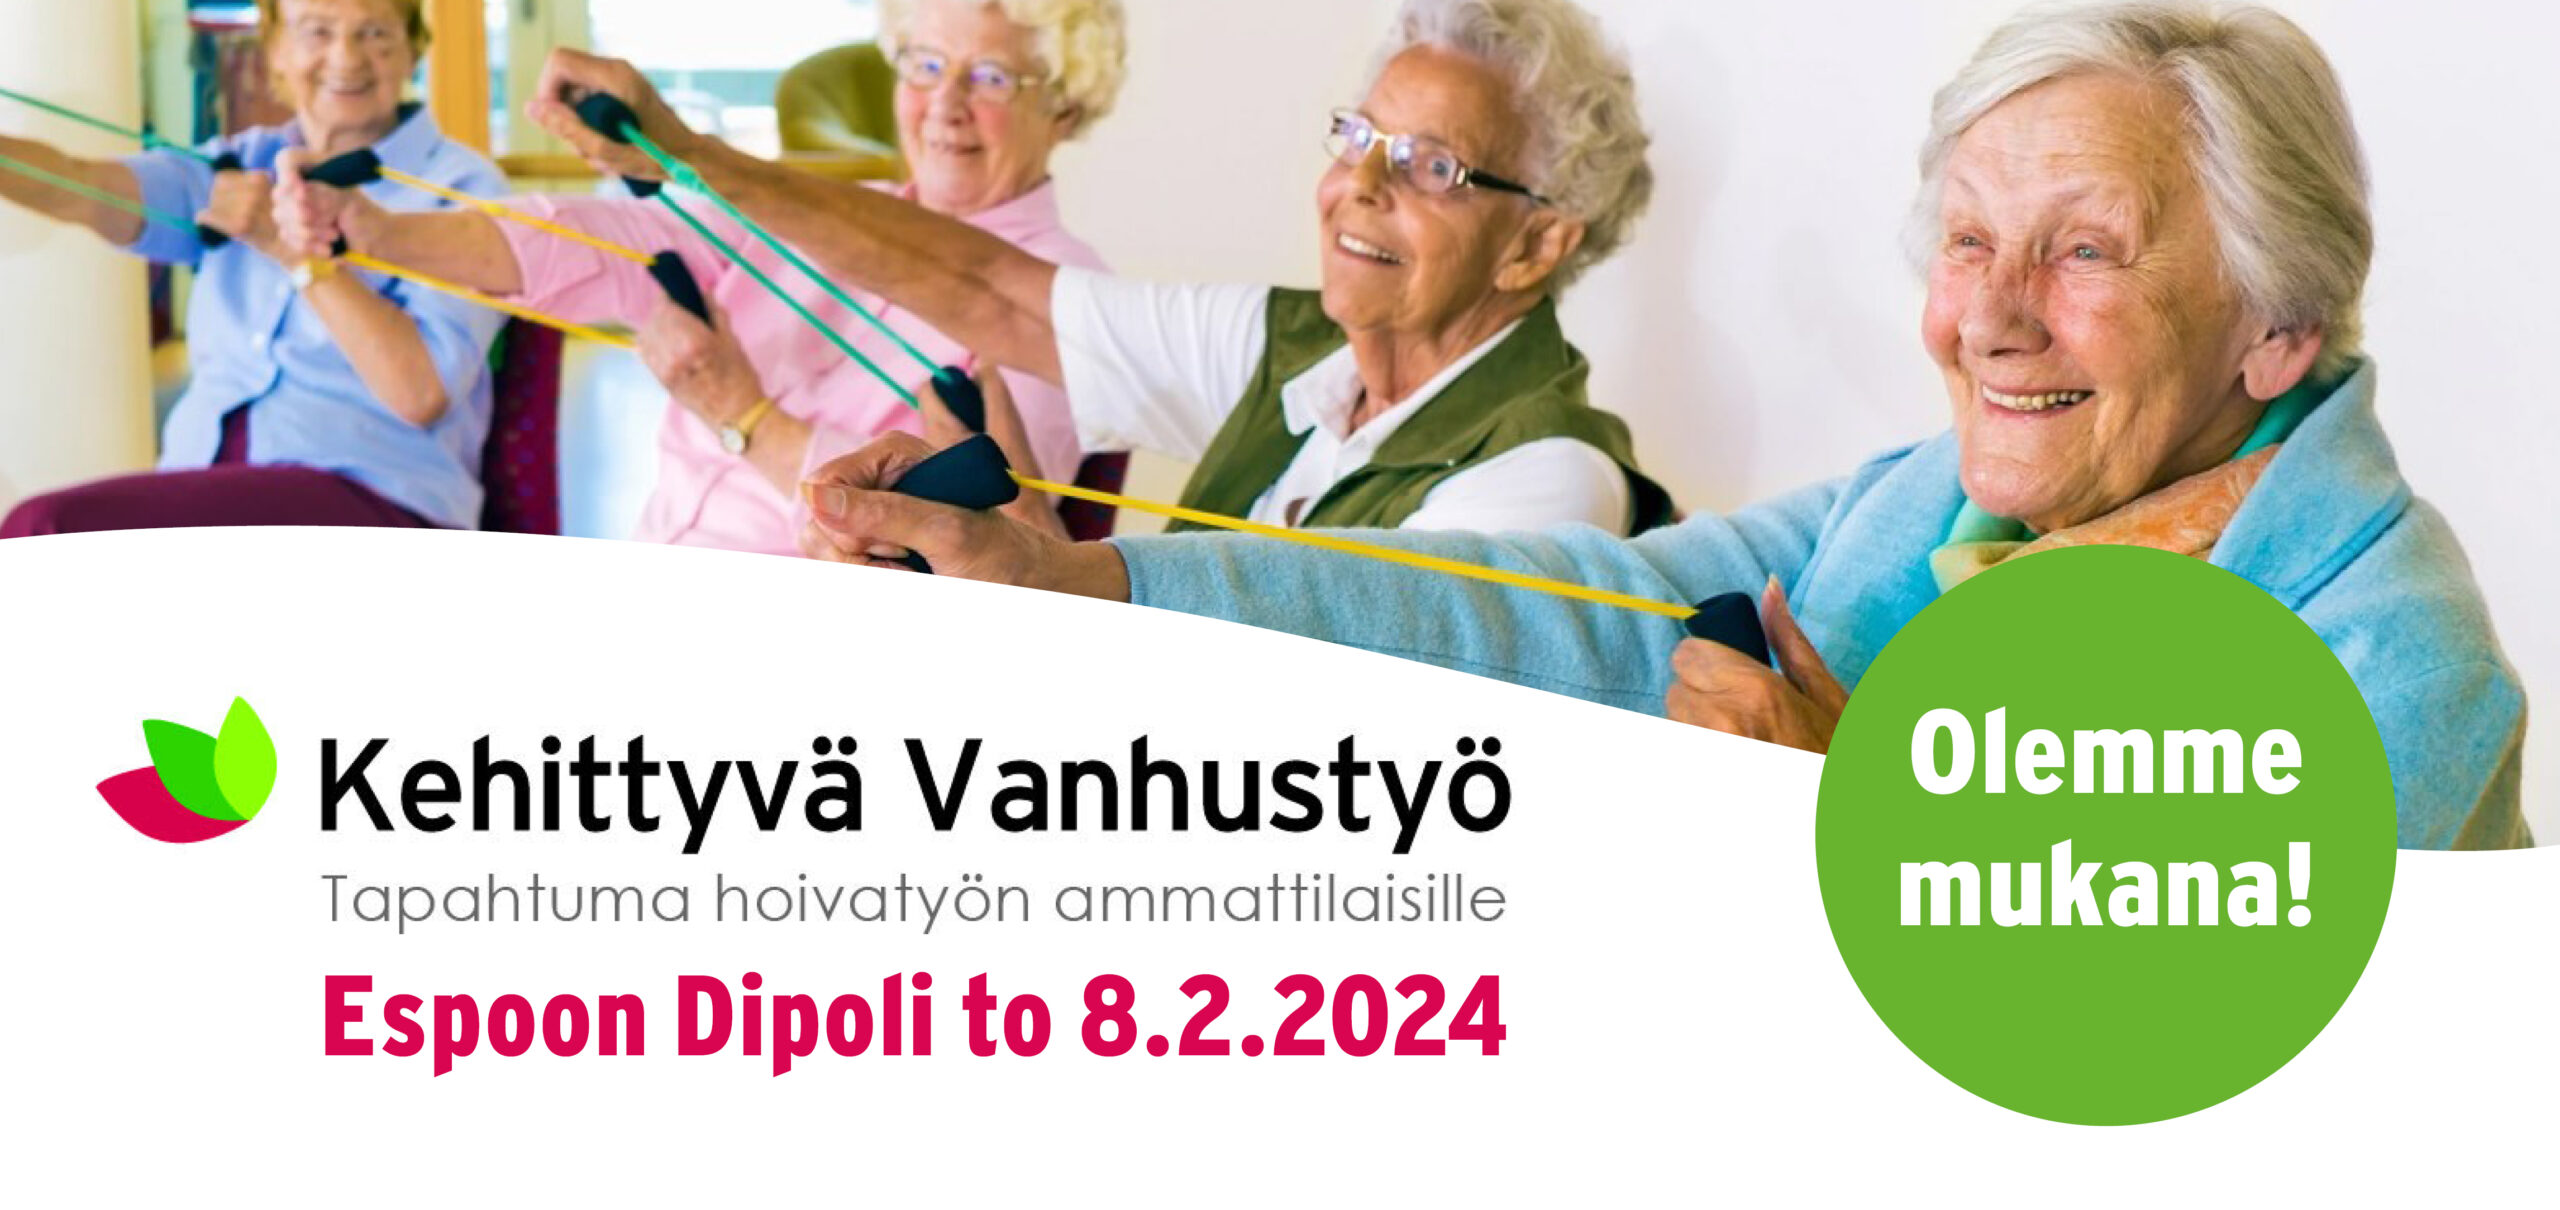 Kehittyvä Vanhustyö Espoo 8.2.2024